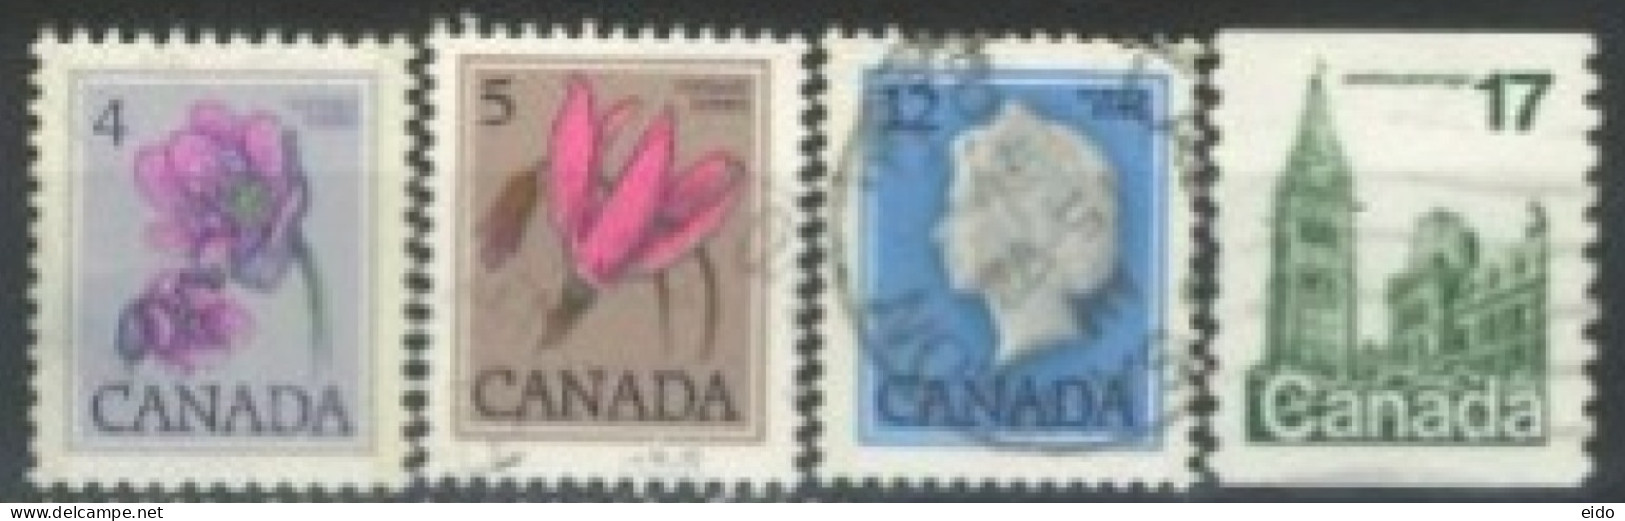 CANADA - 1977, QUEEN ELIZABETH II, FLOWERS & HOUSE OF PARLIAMENTSTAMPS SET OF 4, USED. - Gebruikt